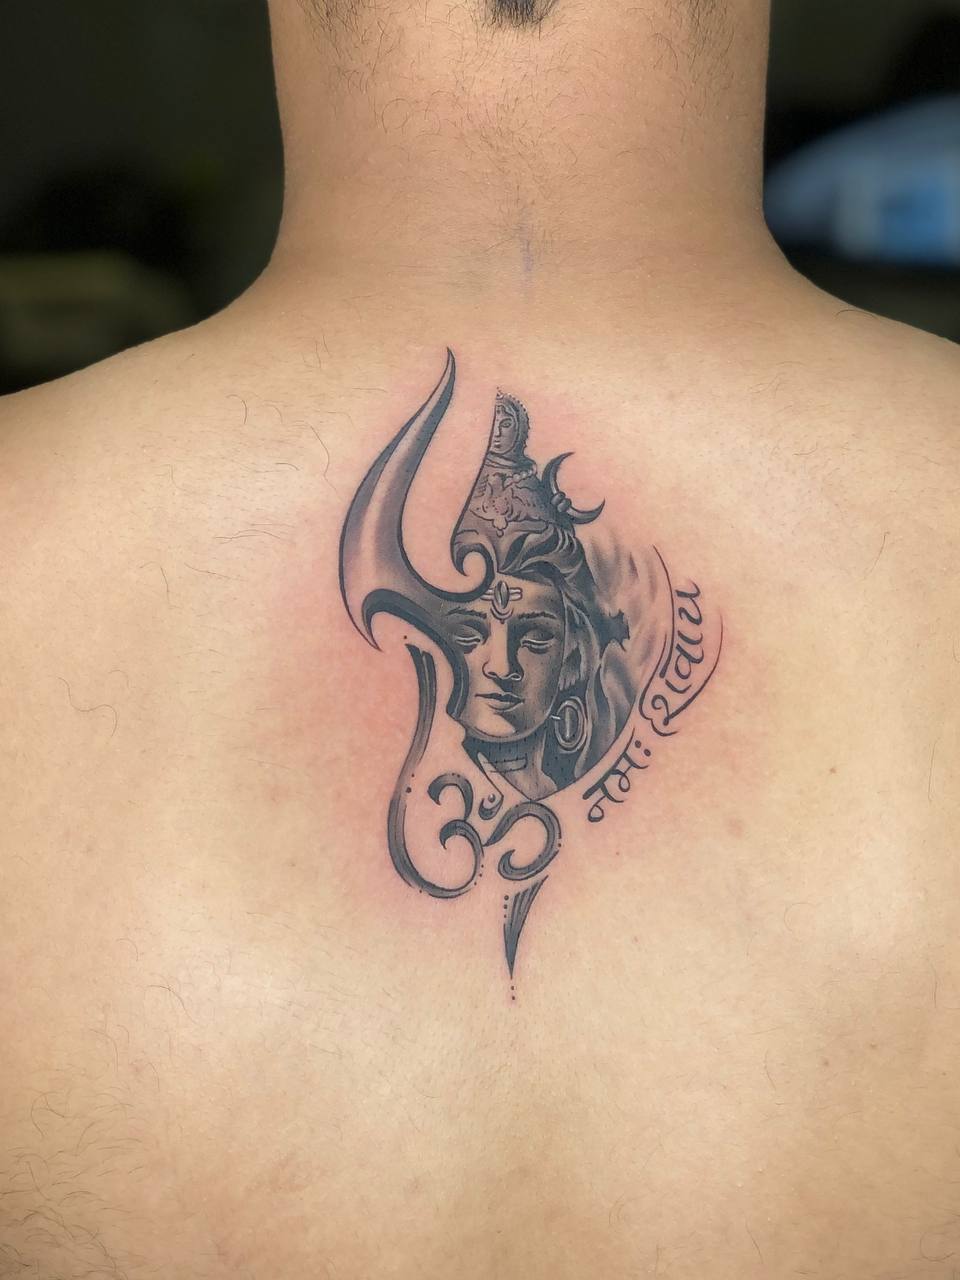 Lord Shiva Portrait Tattoo On Chest - Tattoos Designs